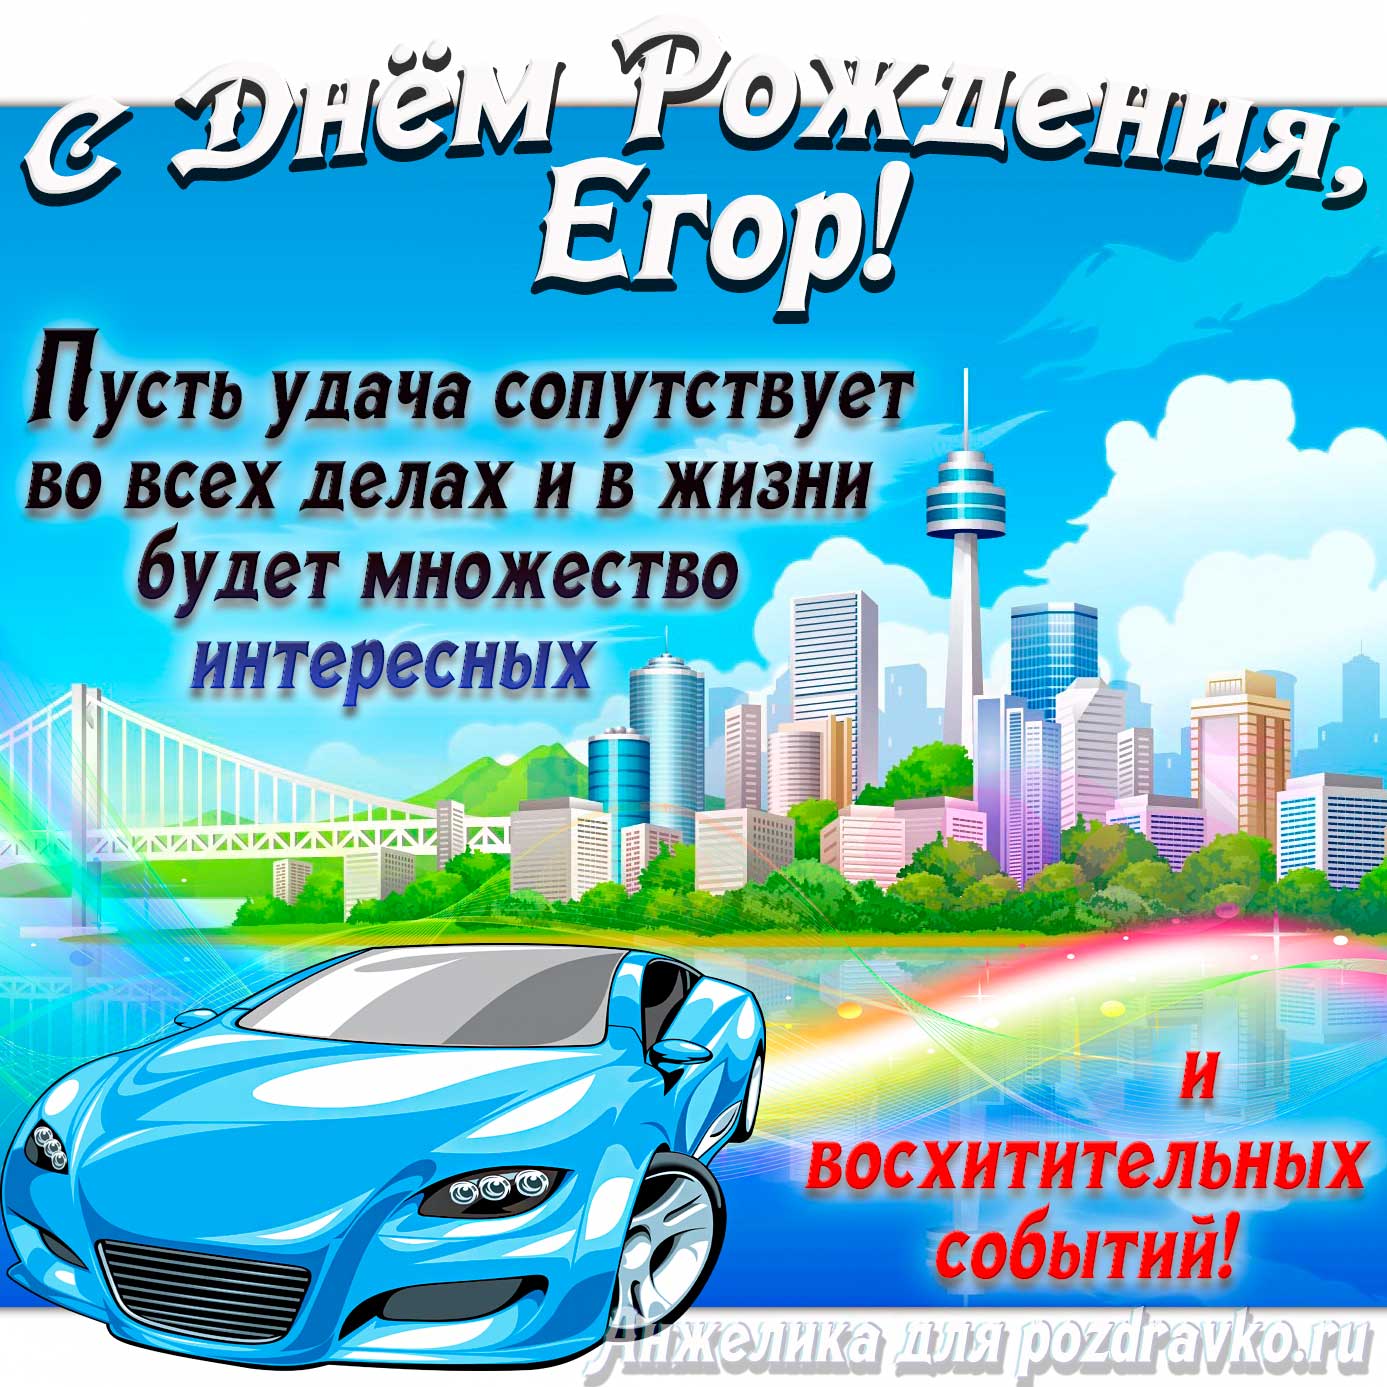 Открытка - с Днём Рождения Егор с голубой машиной и пожеланием. Скачать бесплатно или отправить картинку.